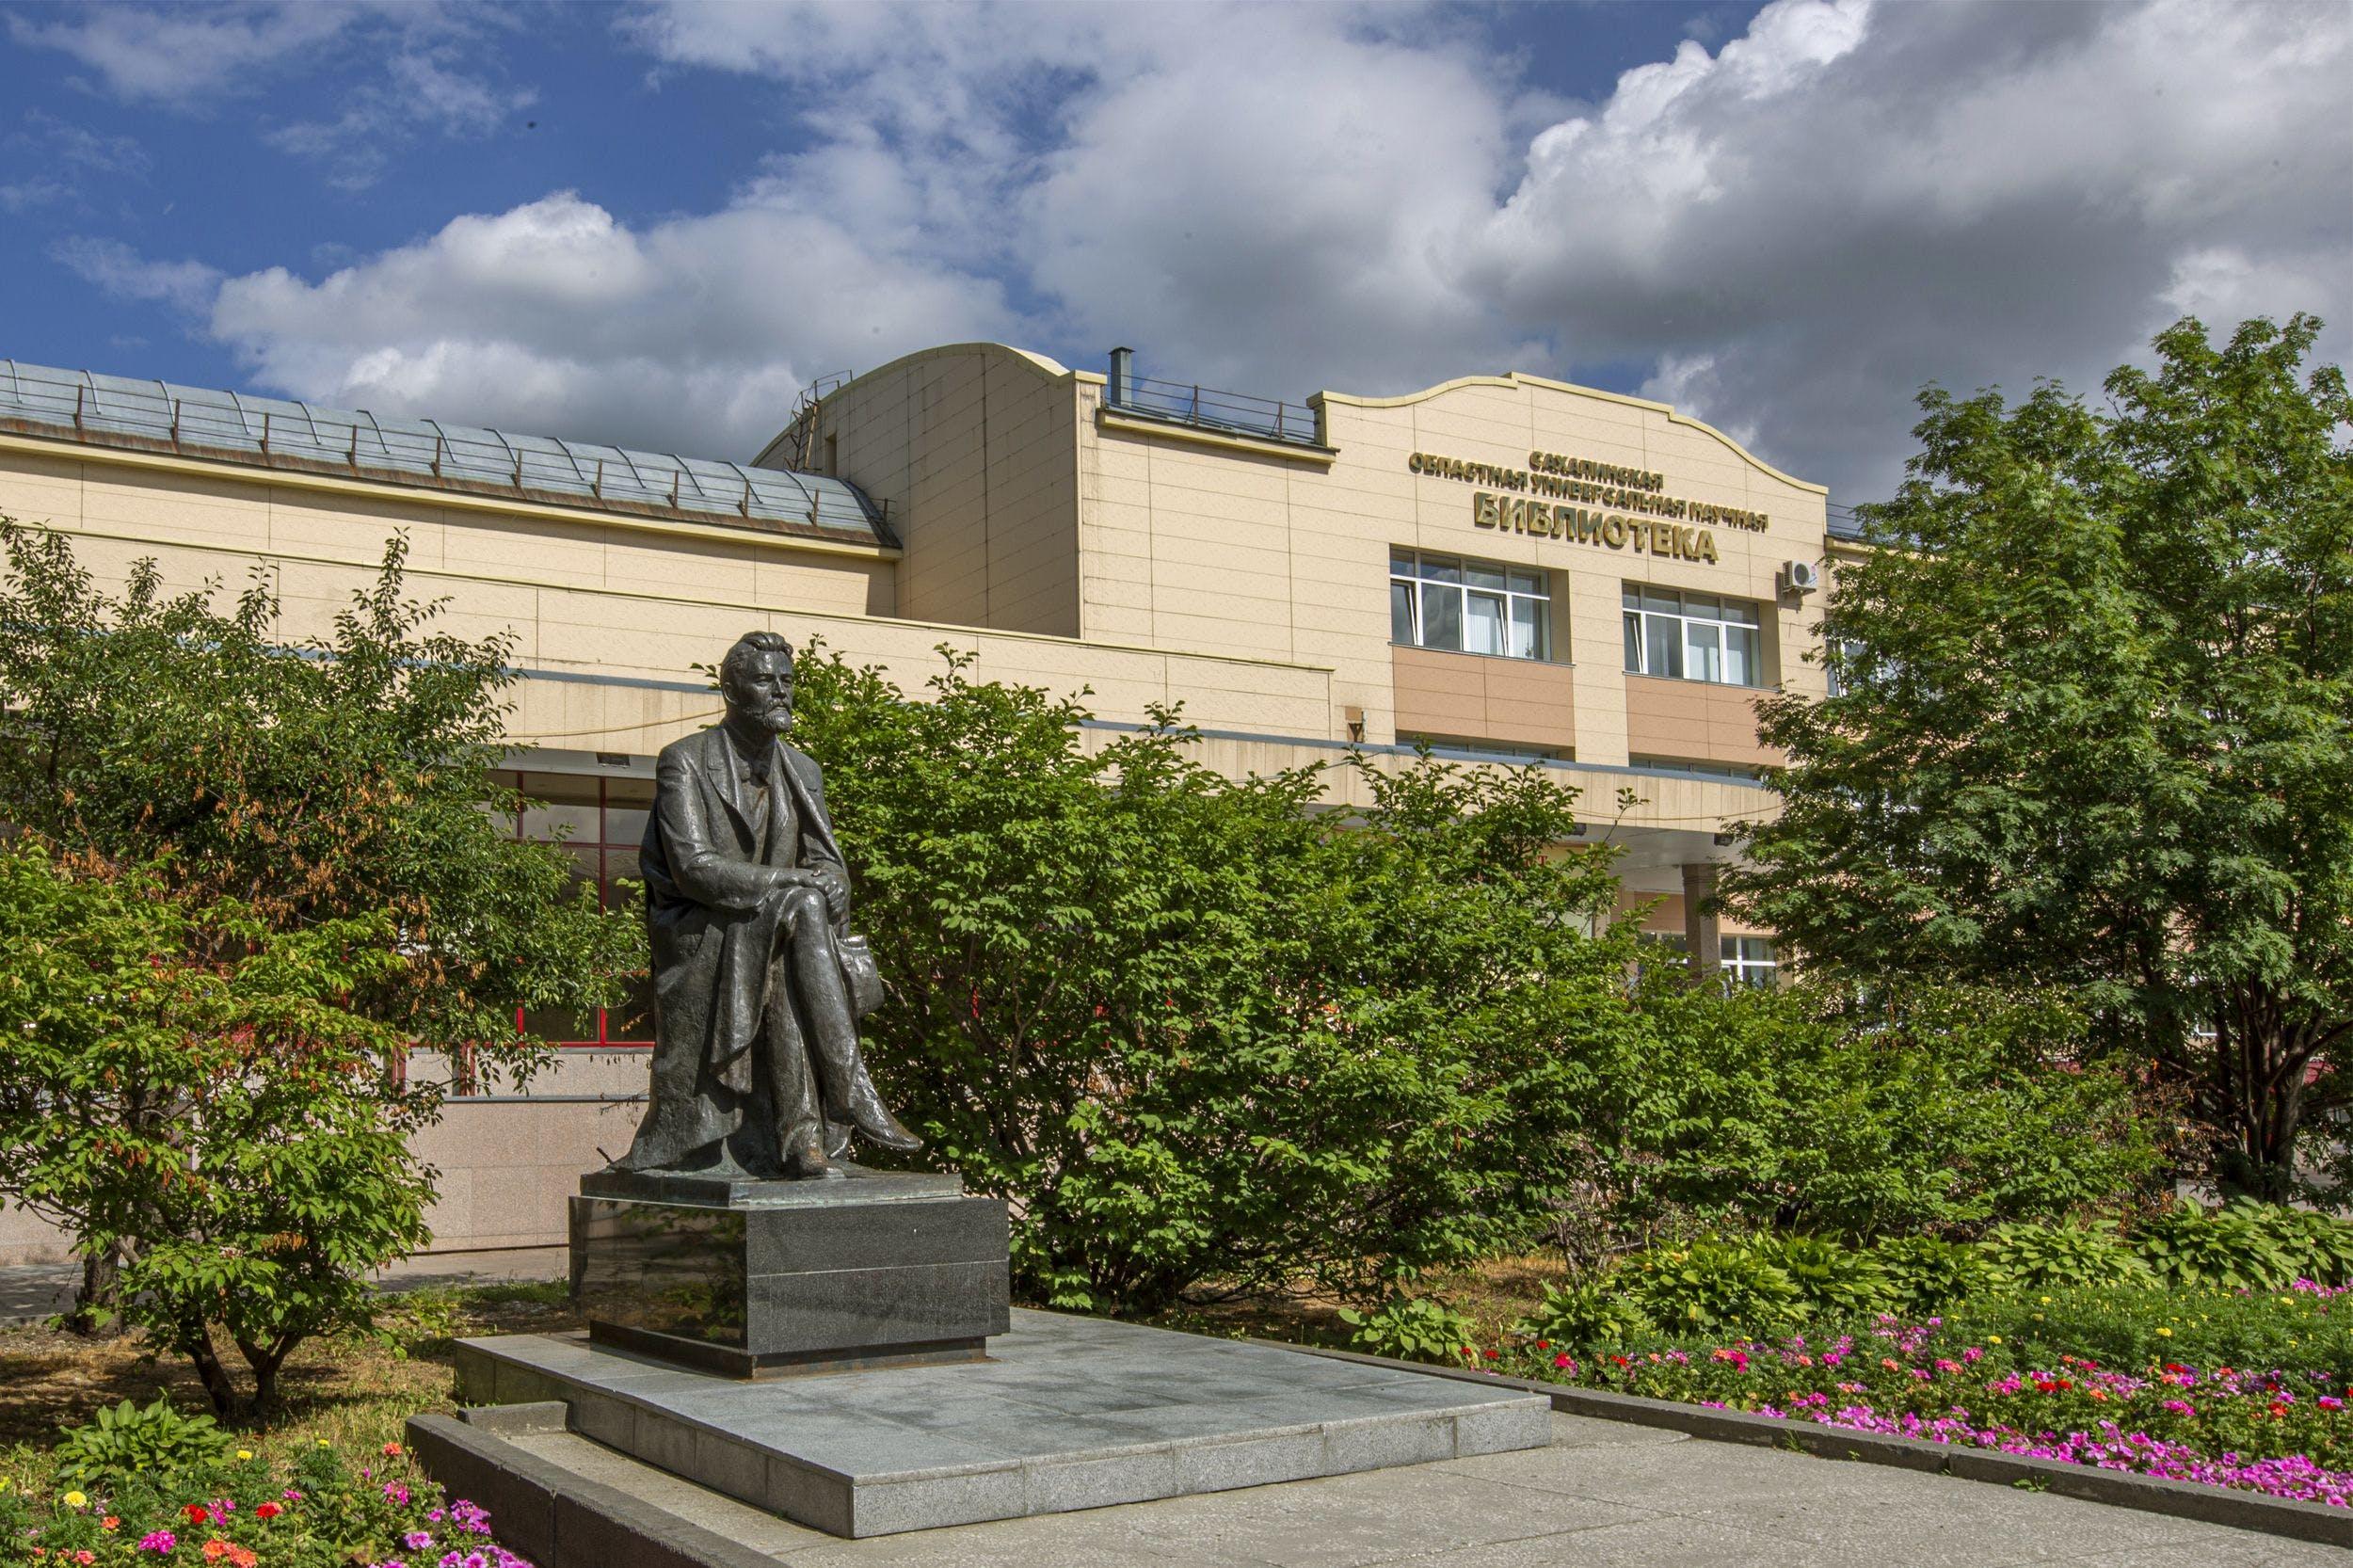 Сахалинская областная универсальная научная библиотека, изображение: СахОУНБ